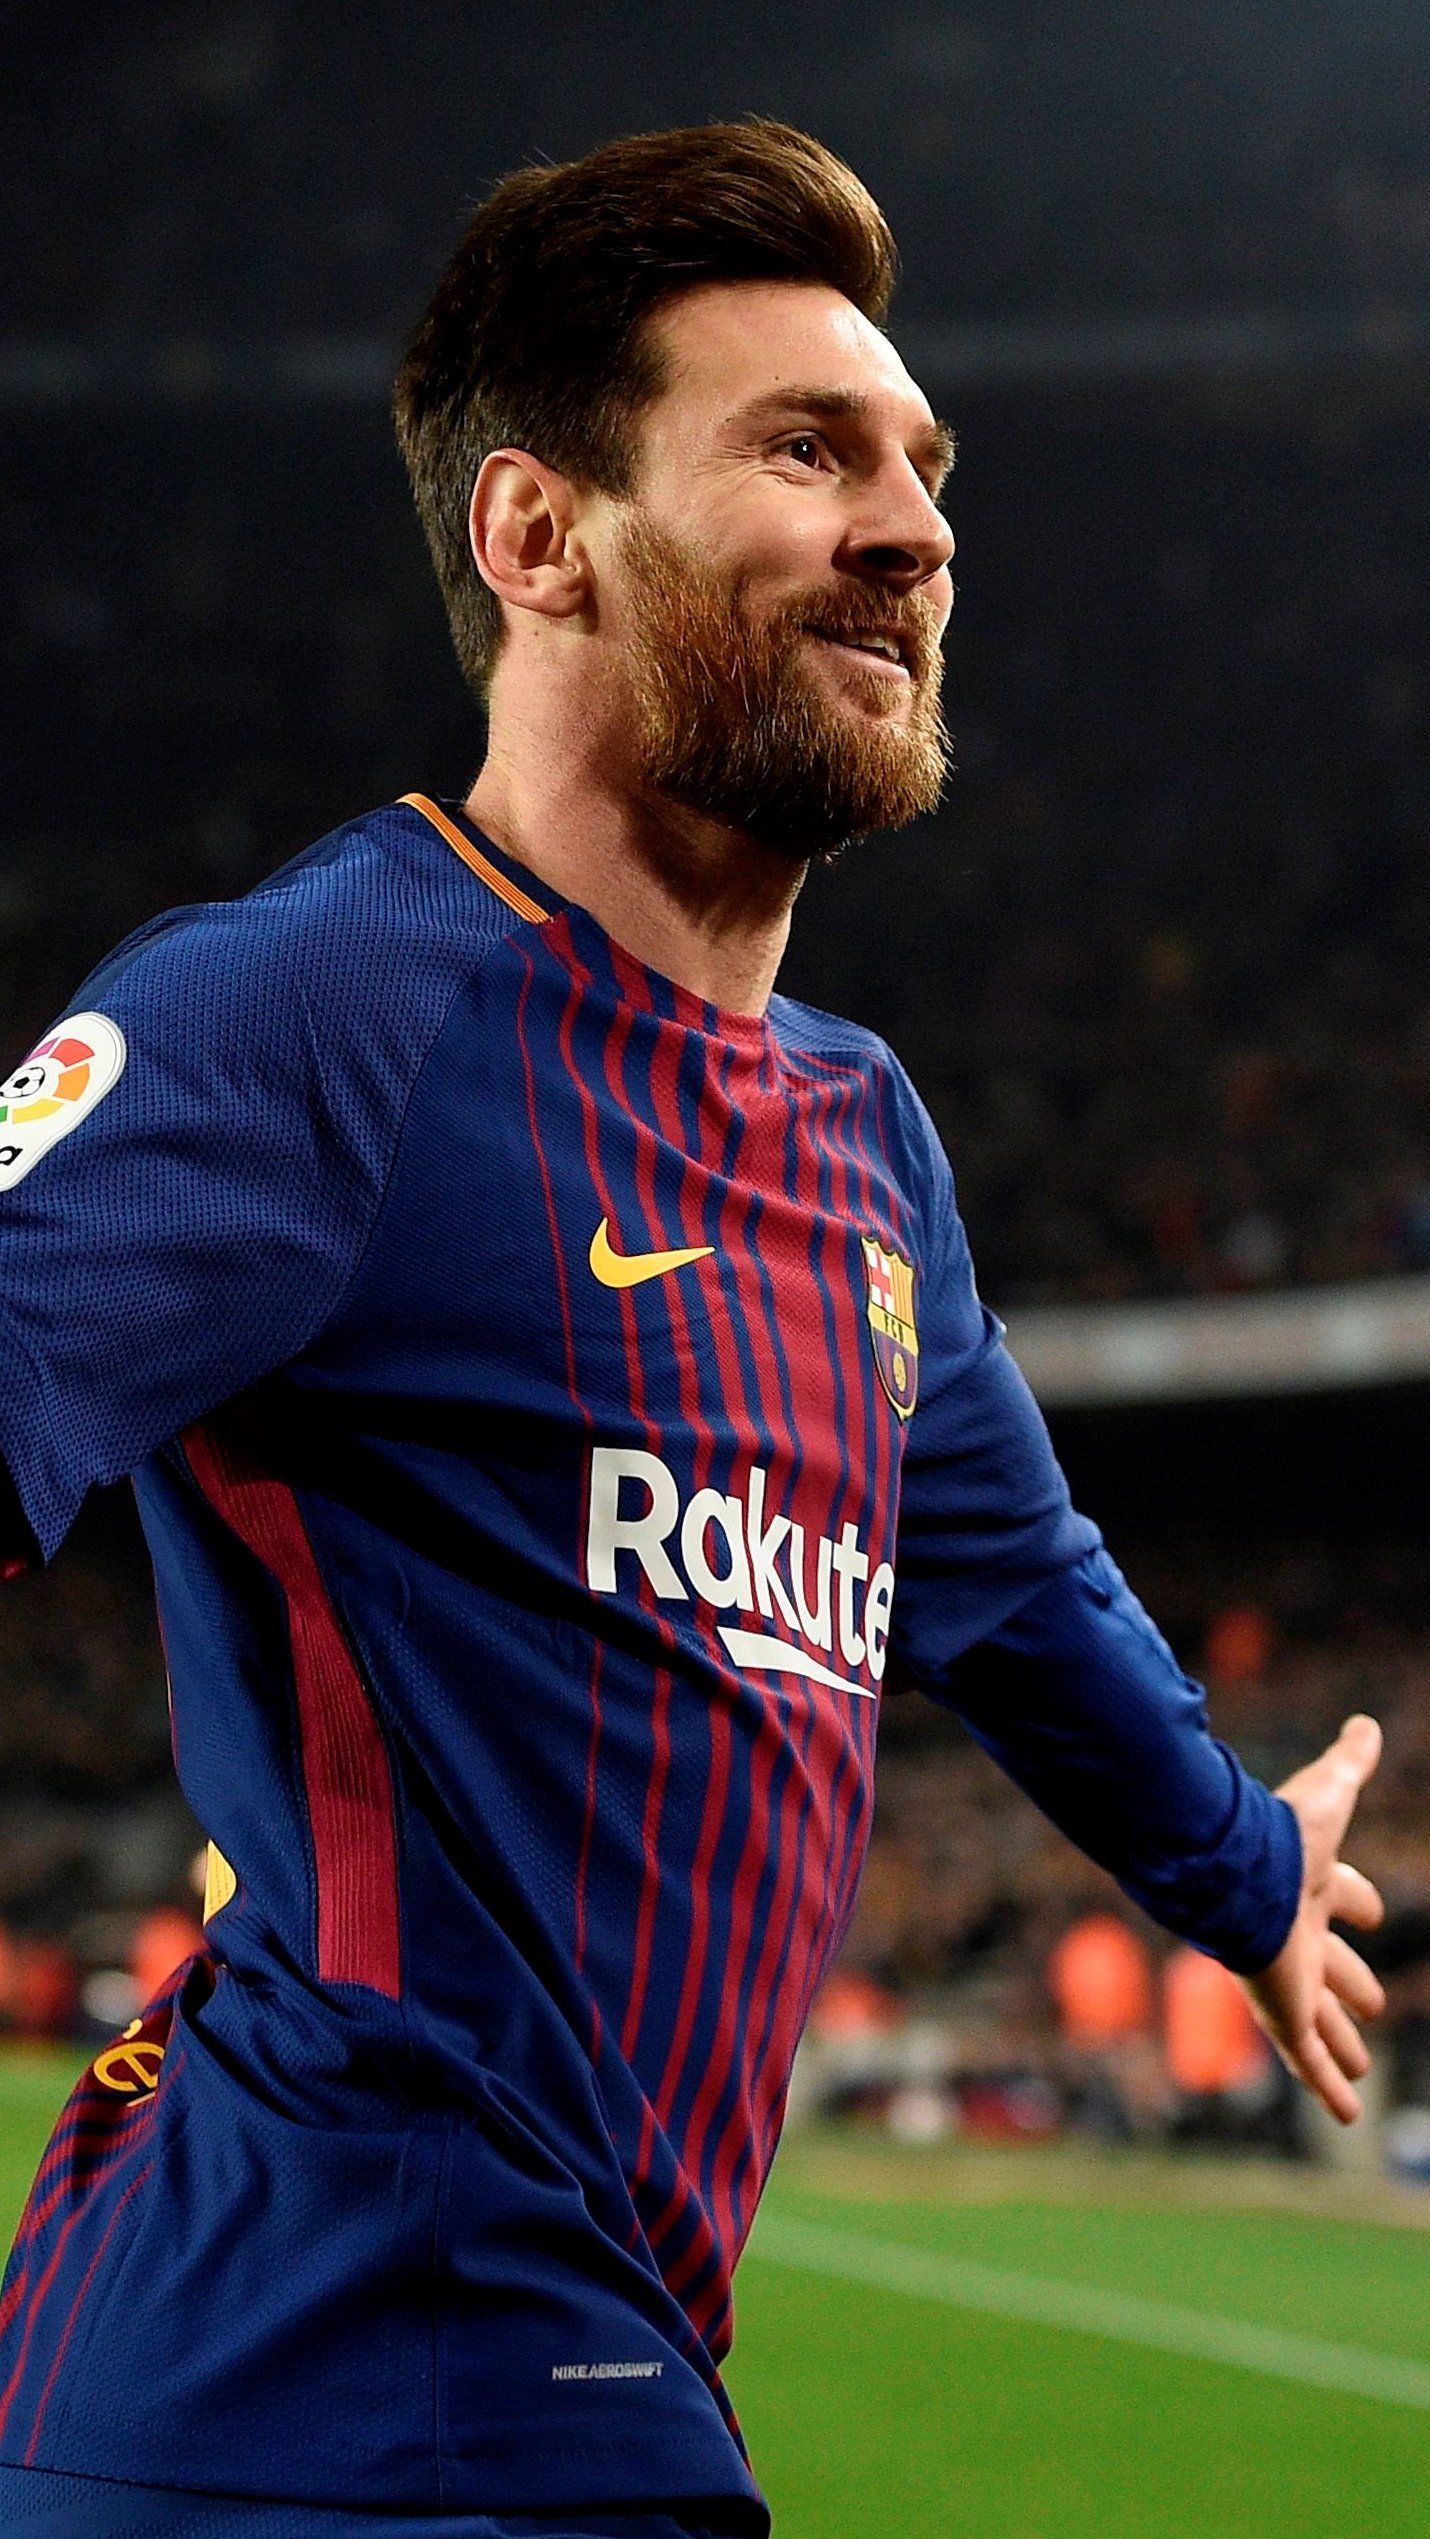 Với hình nền Messi chân dung, bạn sẽ được chiêm ngưỡng toàn bộ vẻ đẹp lôi cuốn và sự quyến rũ không ngờ của siêu sao Barcelona. Đây là một tác phẩm nghệ thuật vừa độc đáo vừa đầy tinh tế mà ai cũng nên khám phá.